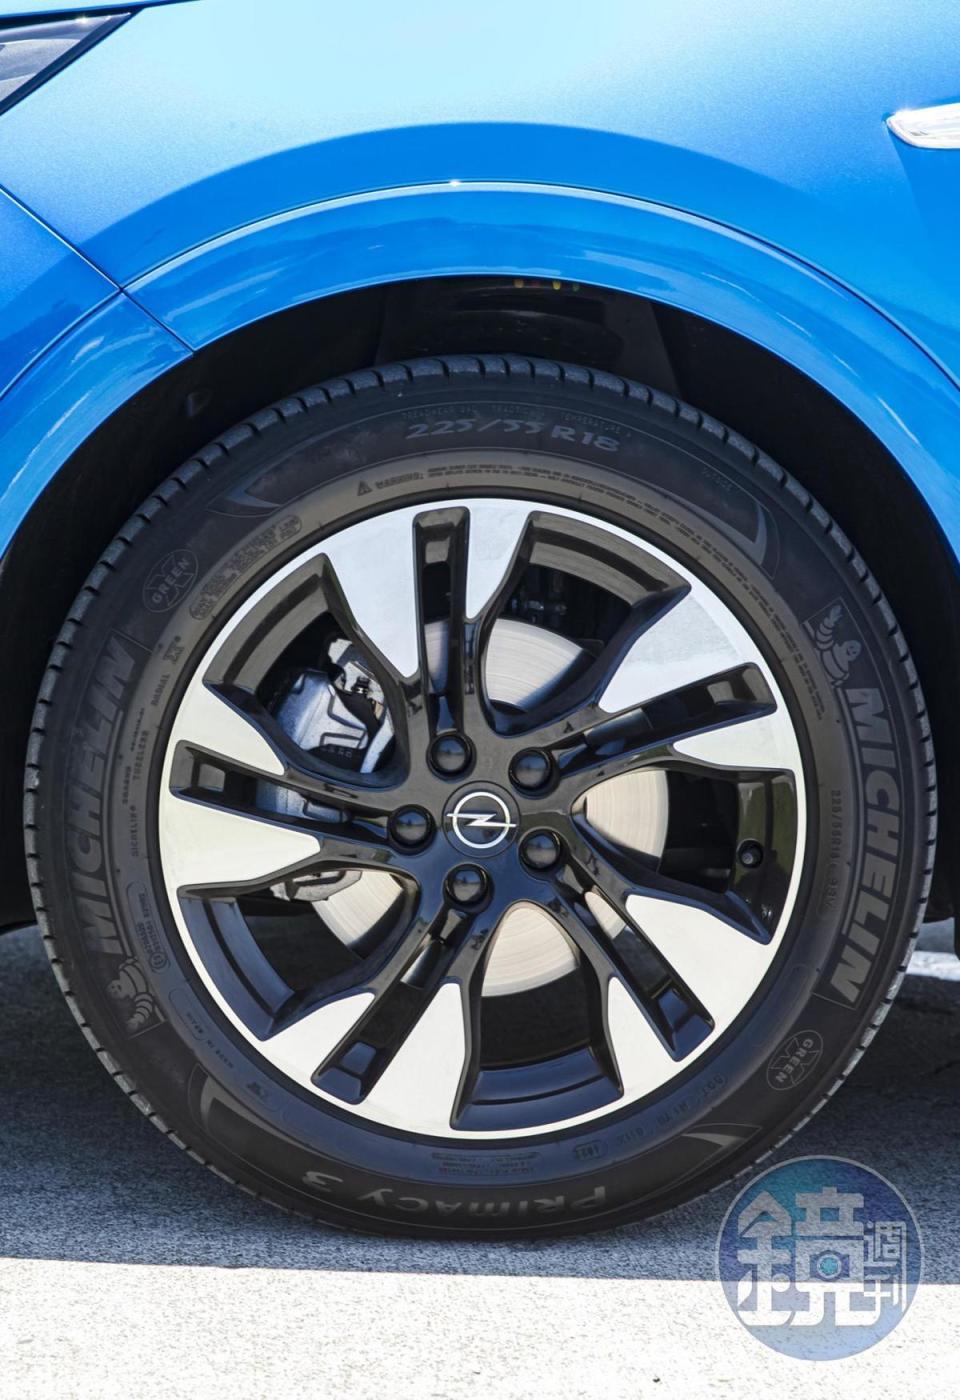 雙色鋁圈尺寸為 225/55 R18，原廠配胎則為 Michelin Primacy 3。